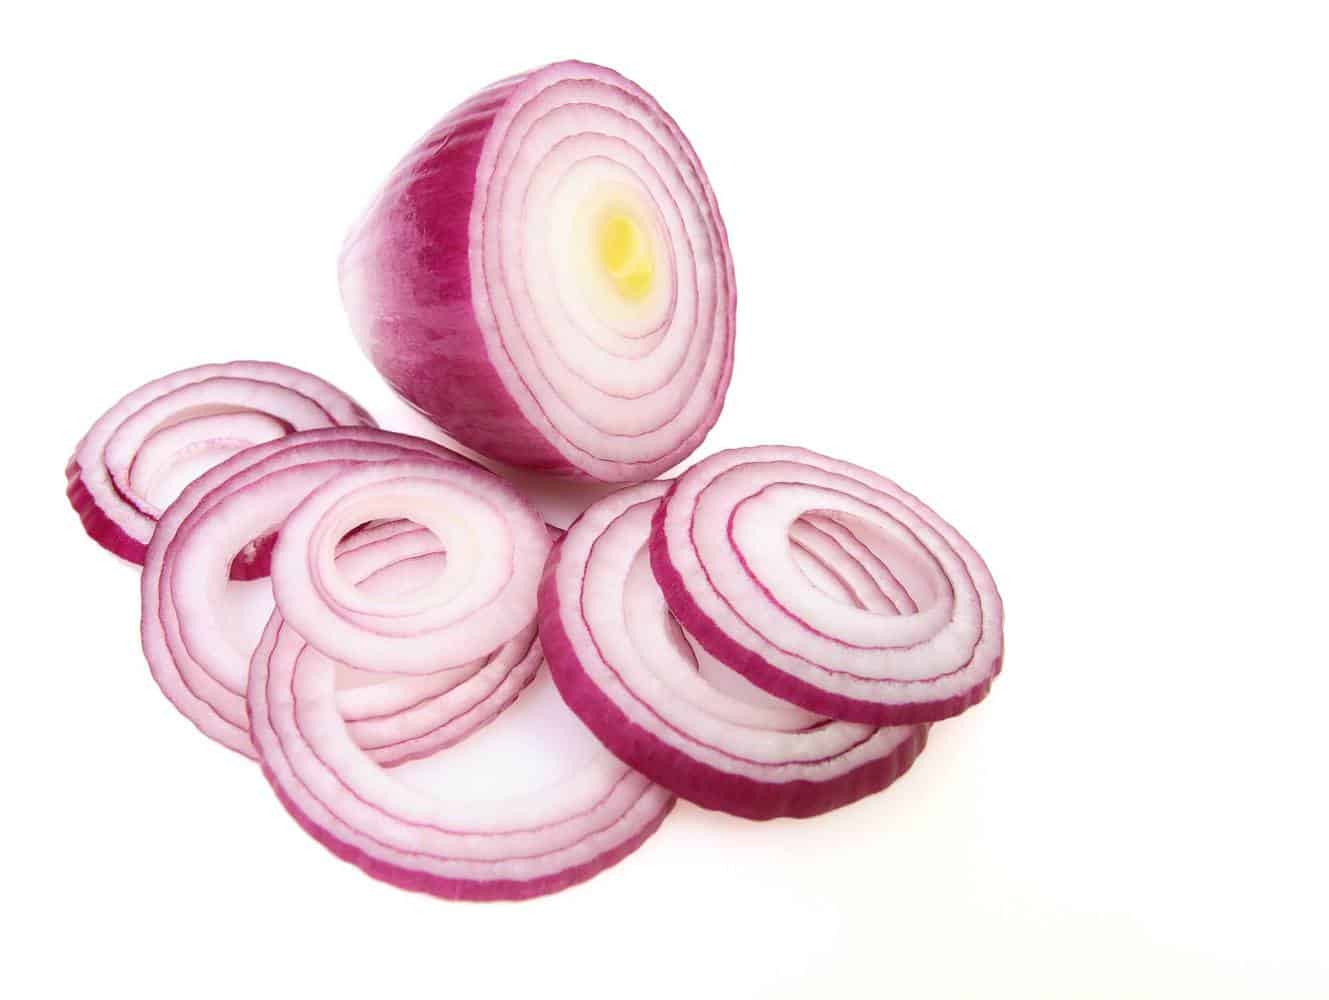 An onion.